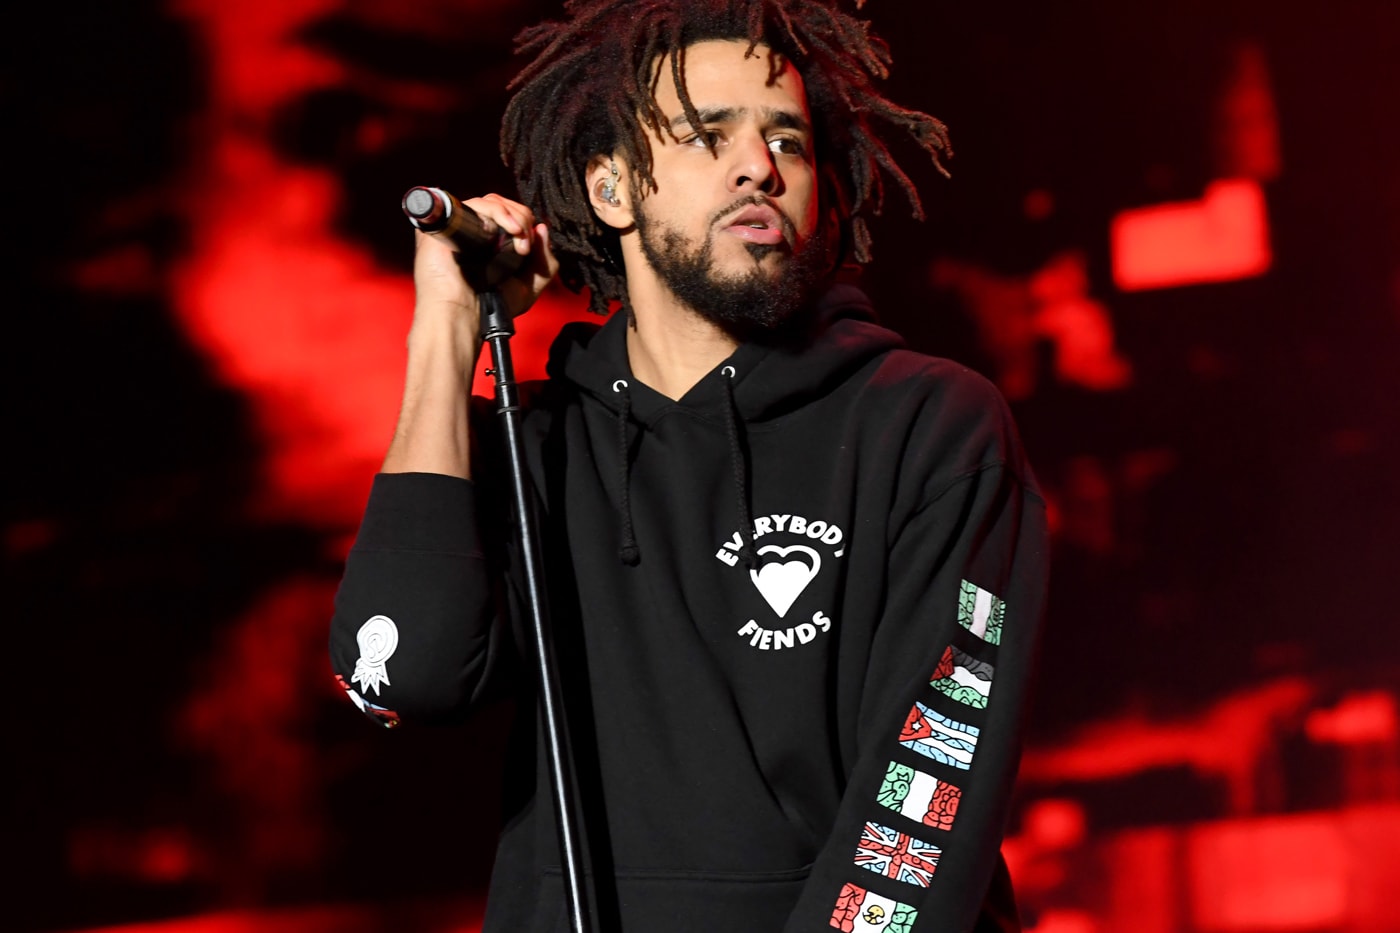 J. Cole Surprise 'K.O.D' Album New York City Listening Party April 20 release